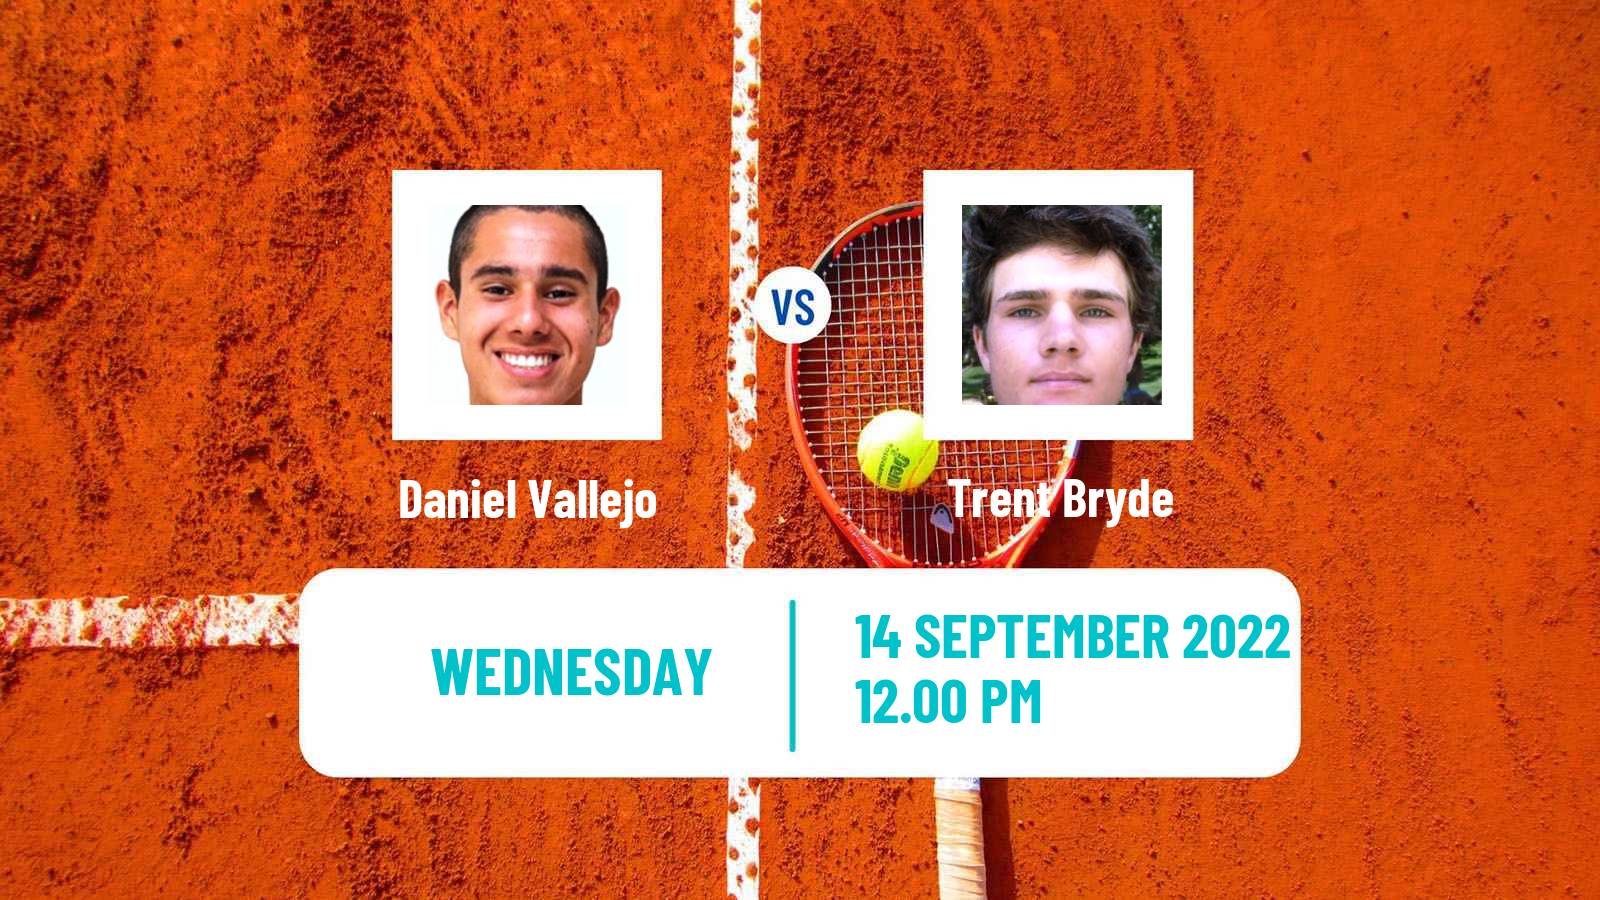 Tennis ITF Tournaments Daniel Vallejo - Trent Bryde